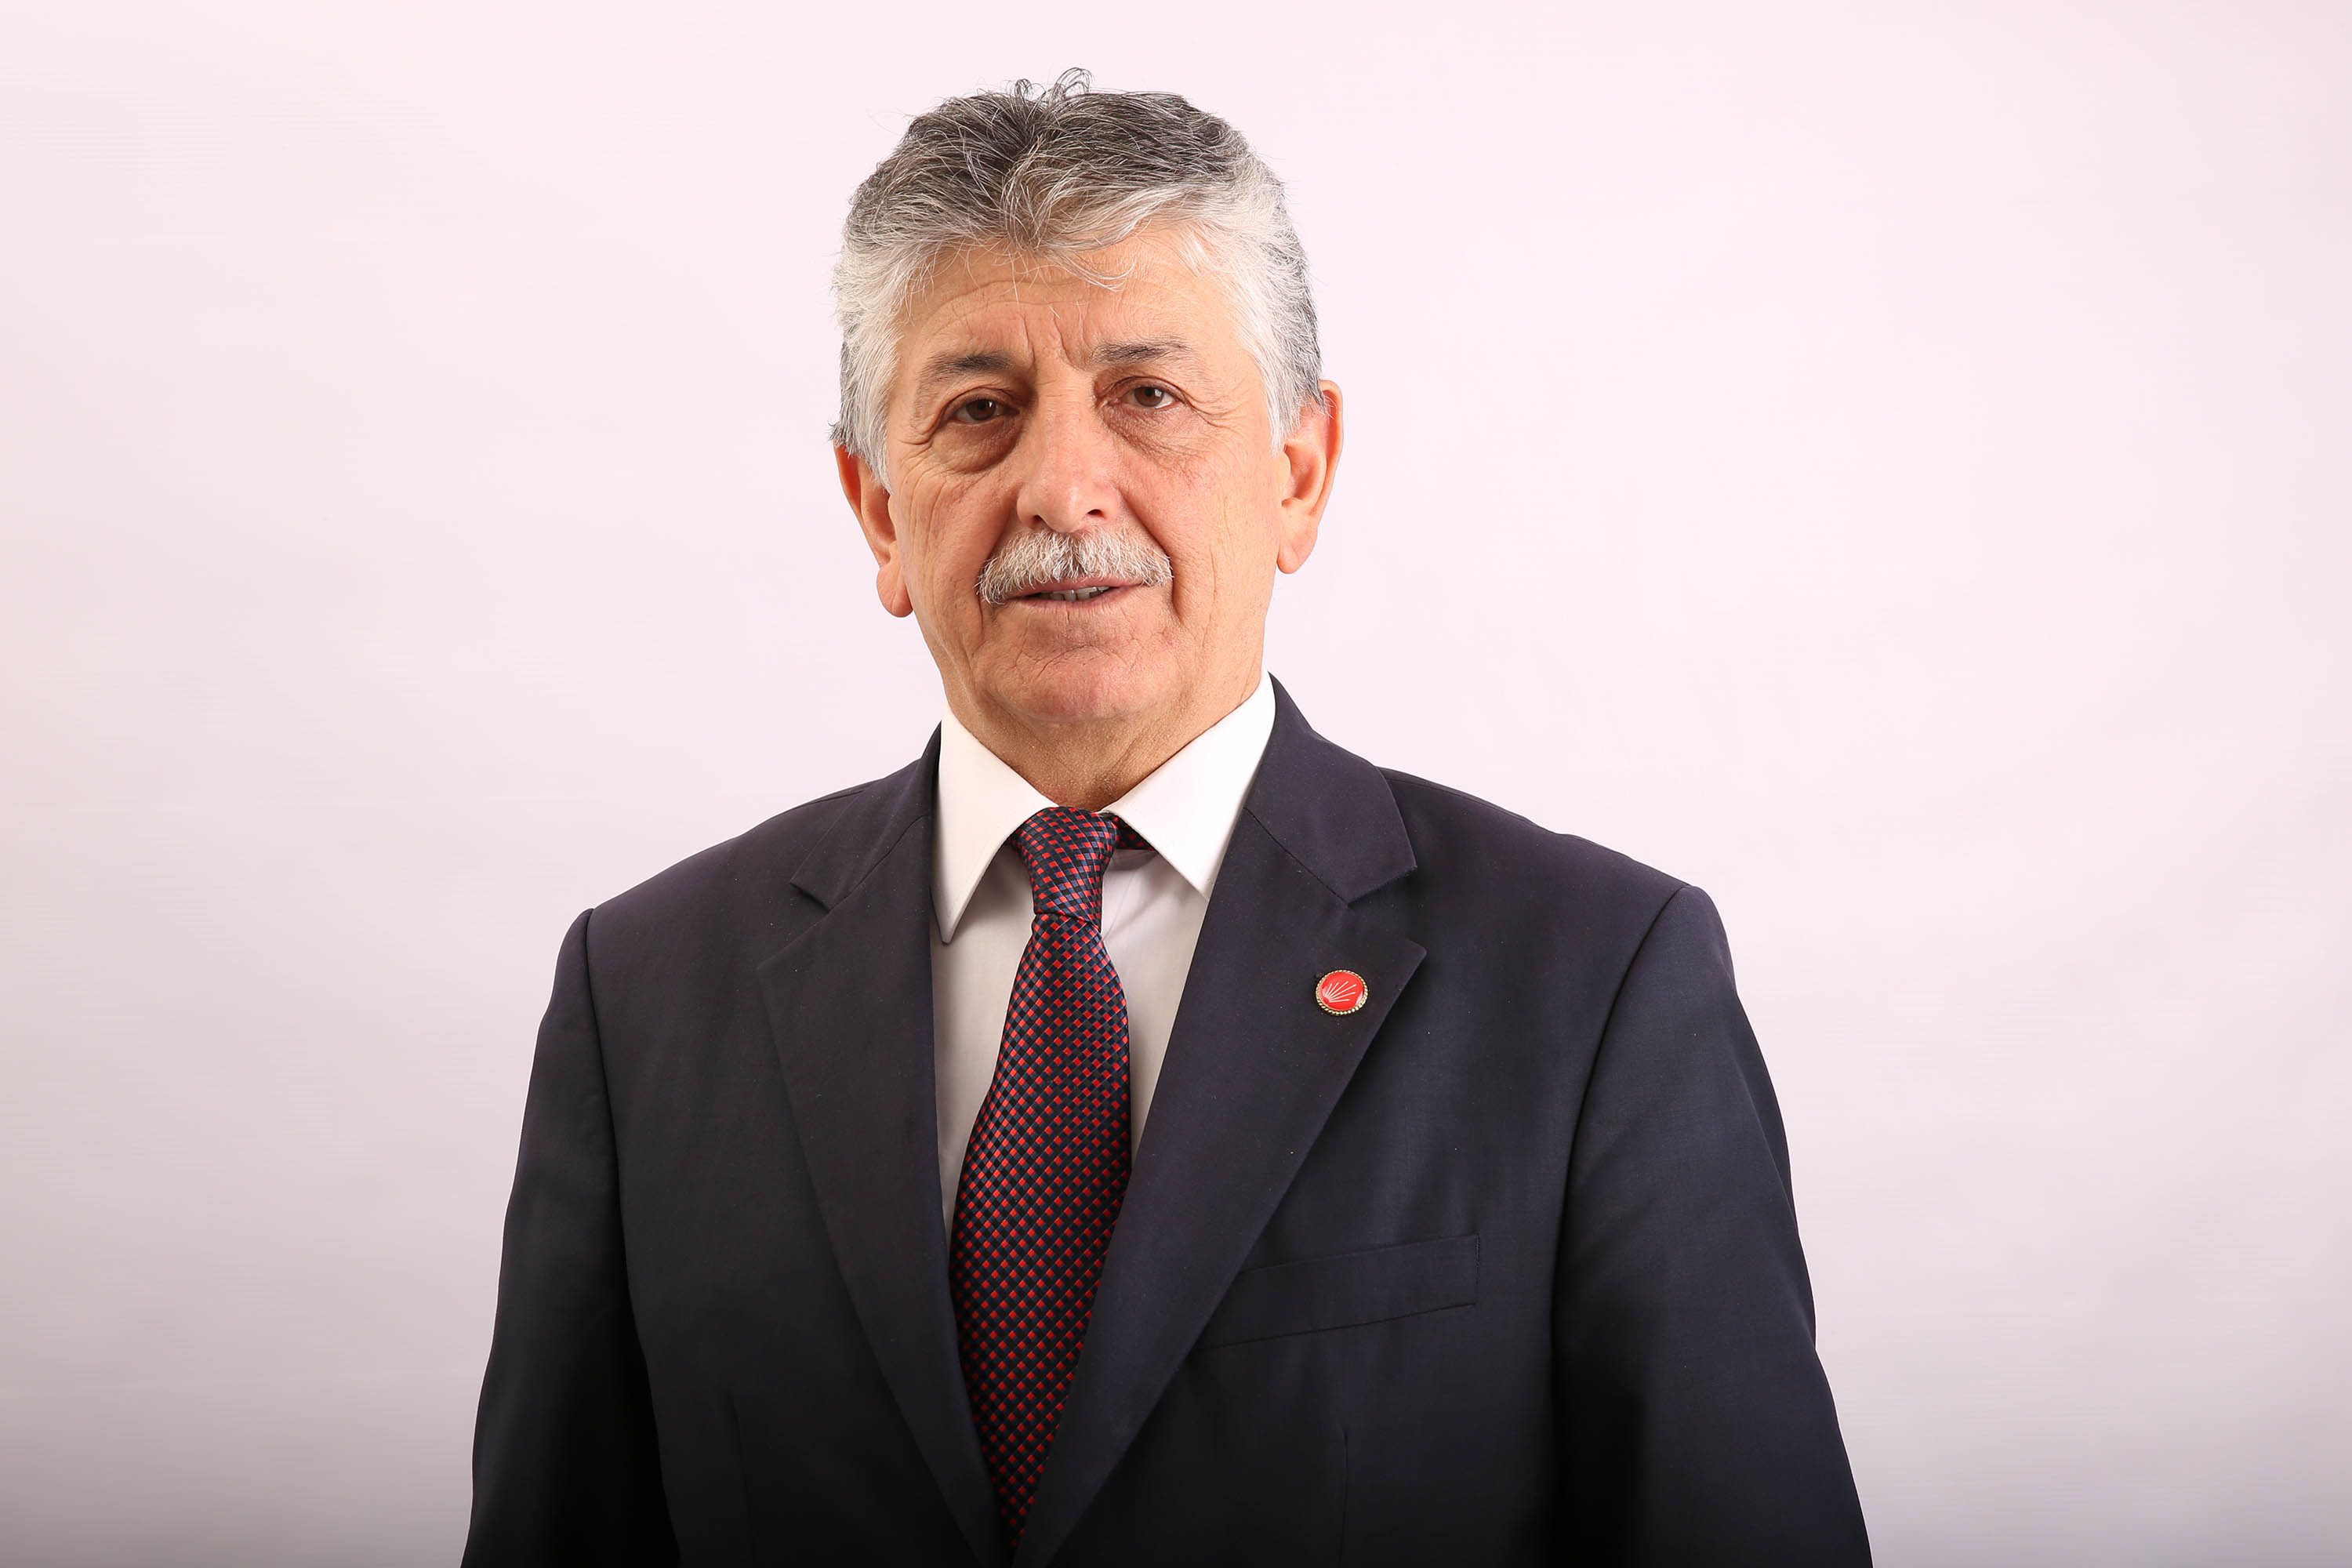 CHP Çankırı İl Başkanı Tekin, görevinden istifa etti